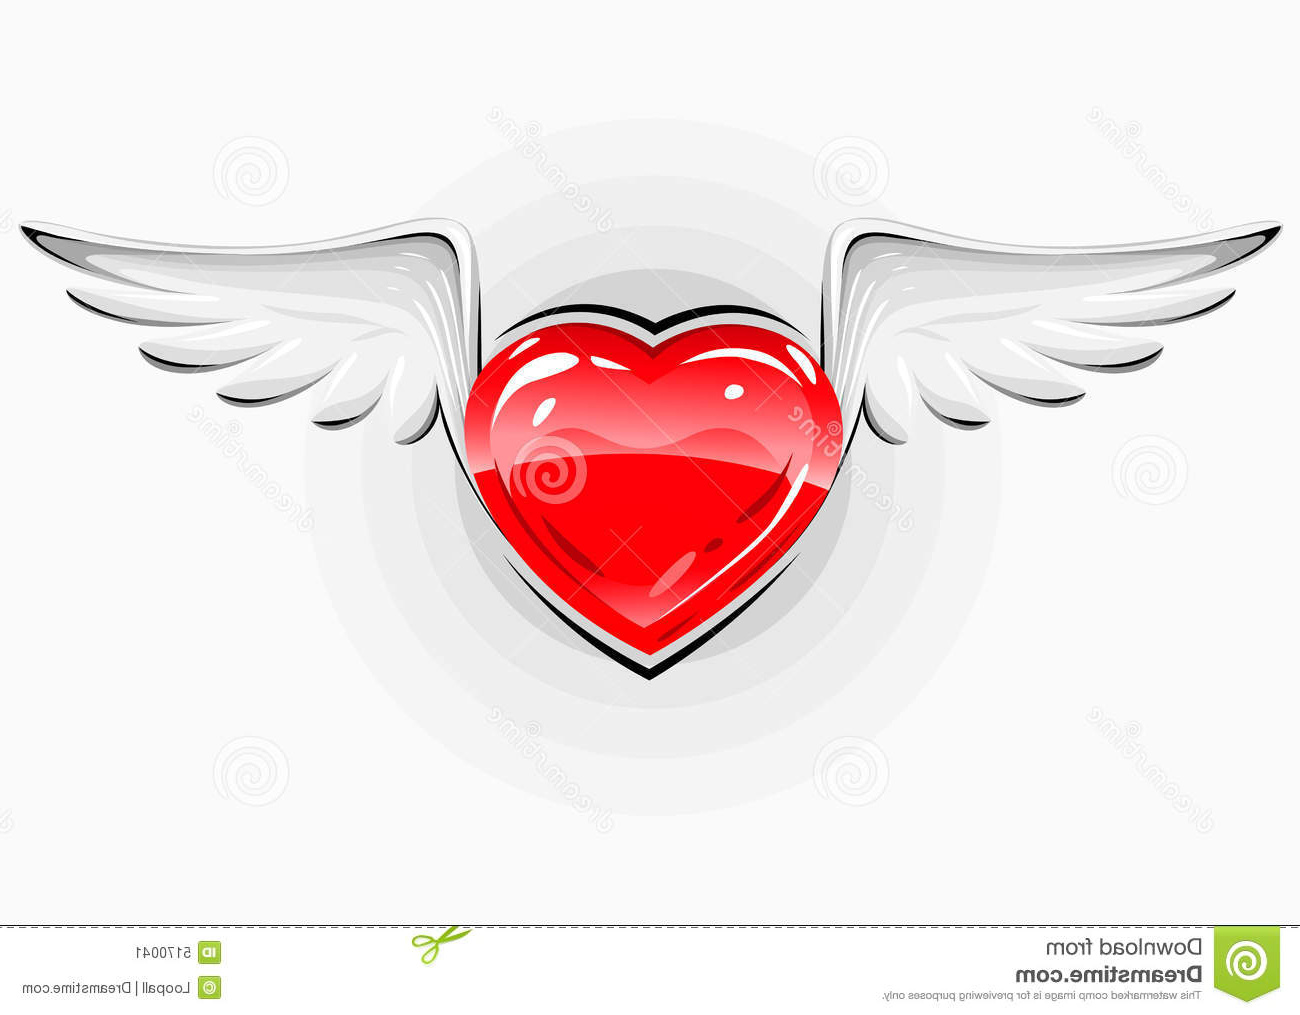 Coeur Avec Des Ailes Élégant Images Coeur Rouge D Amour Avec Les Ailes Blanches Image Stock